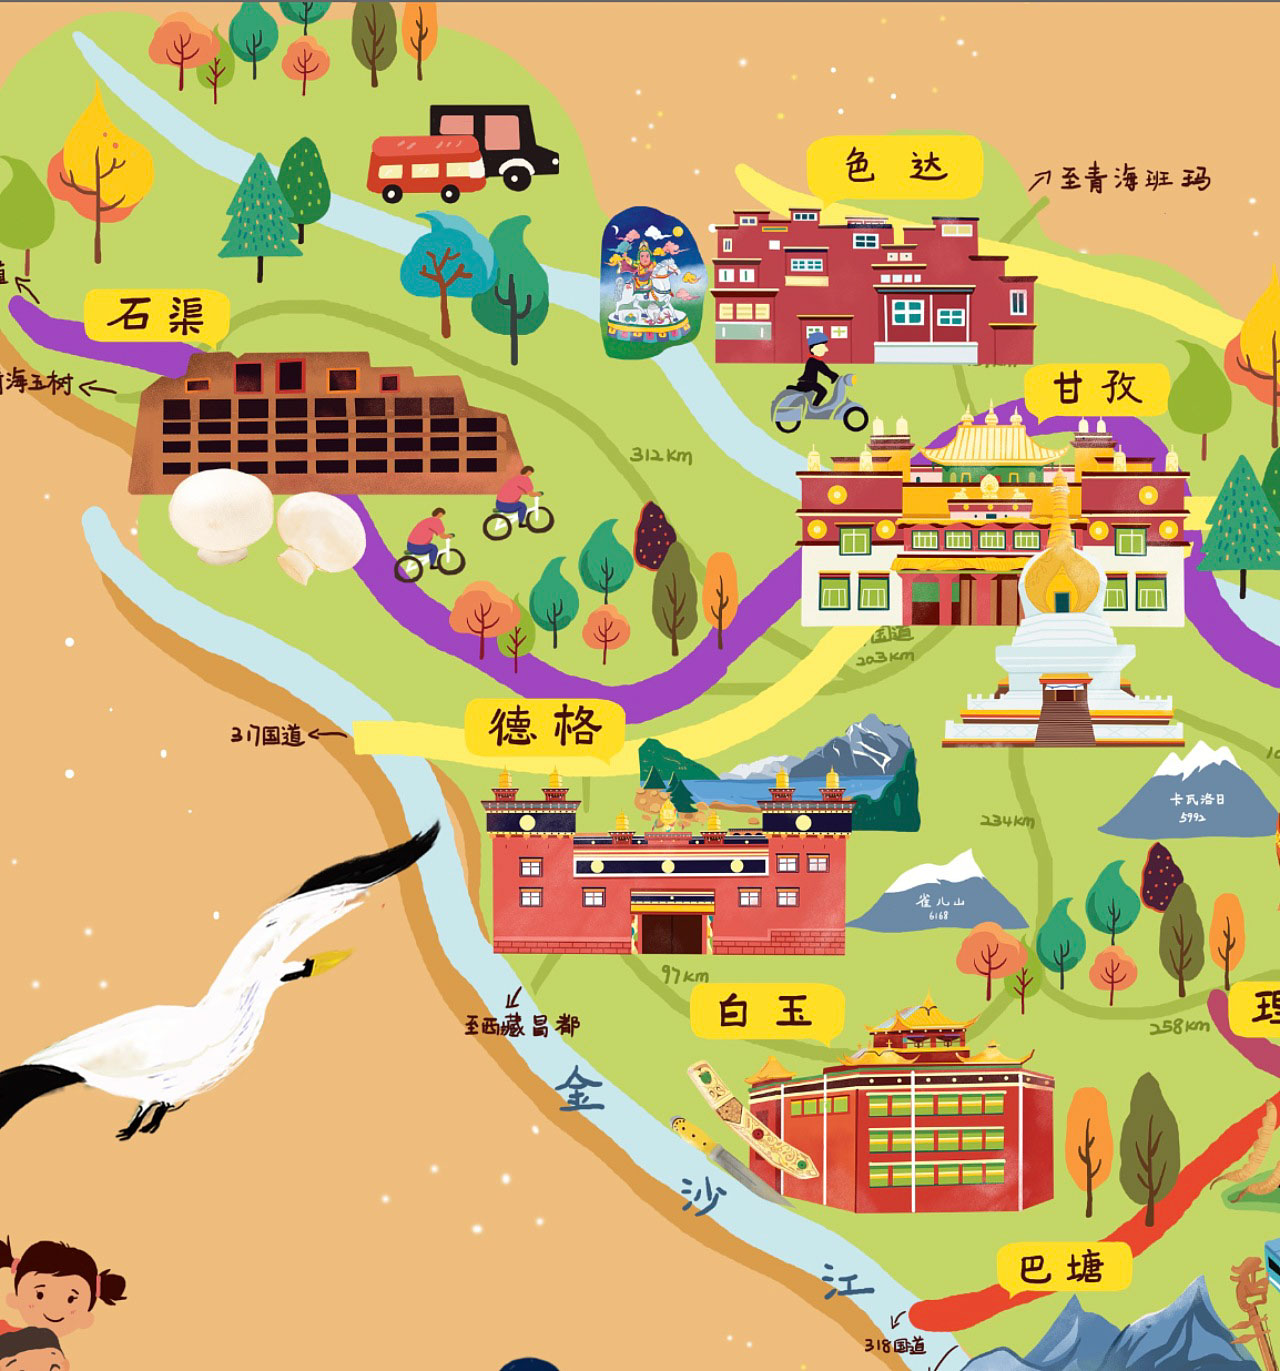 三伏潭镇手绘地图景区的文化宝库